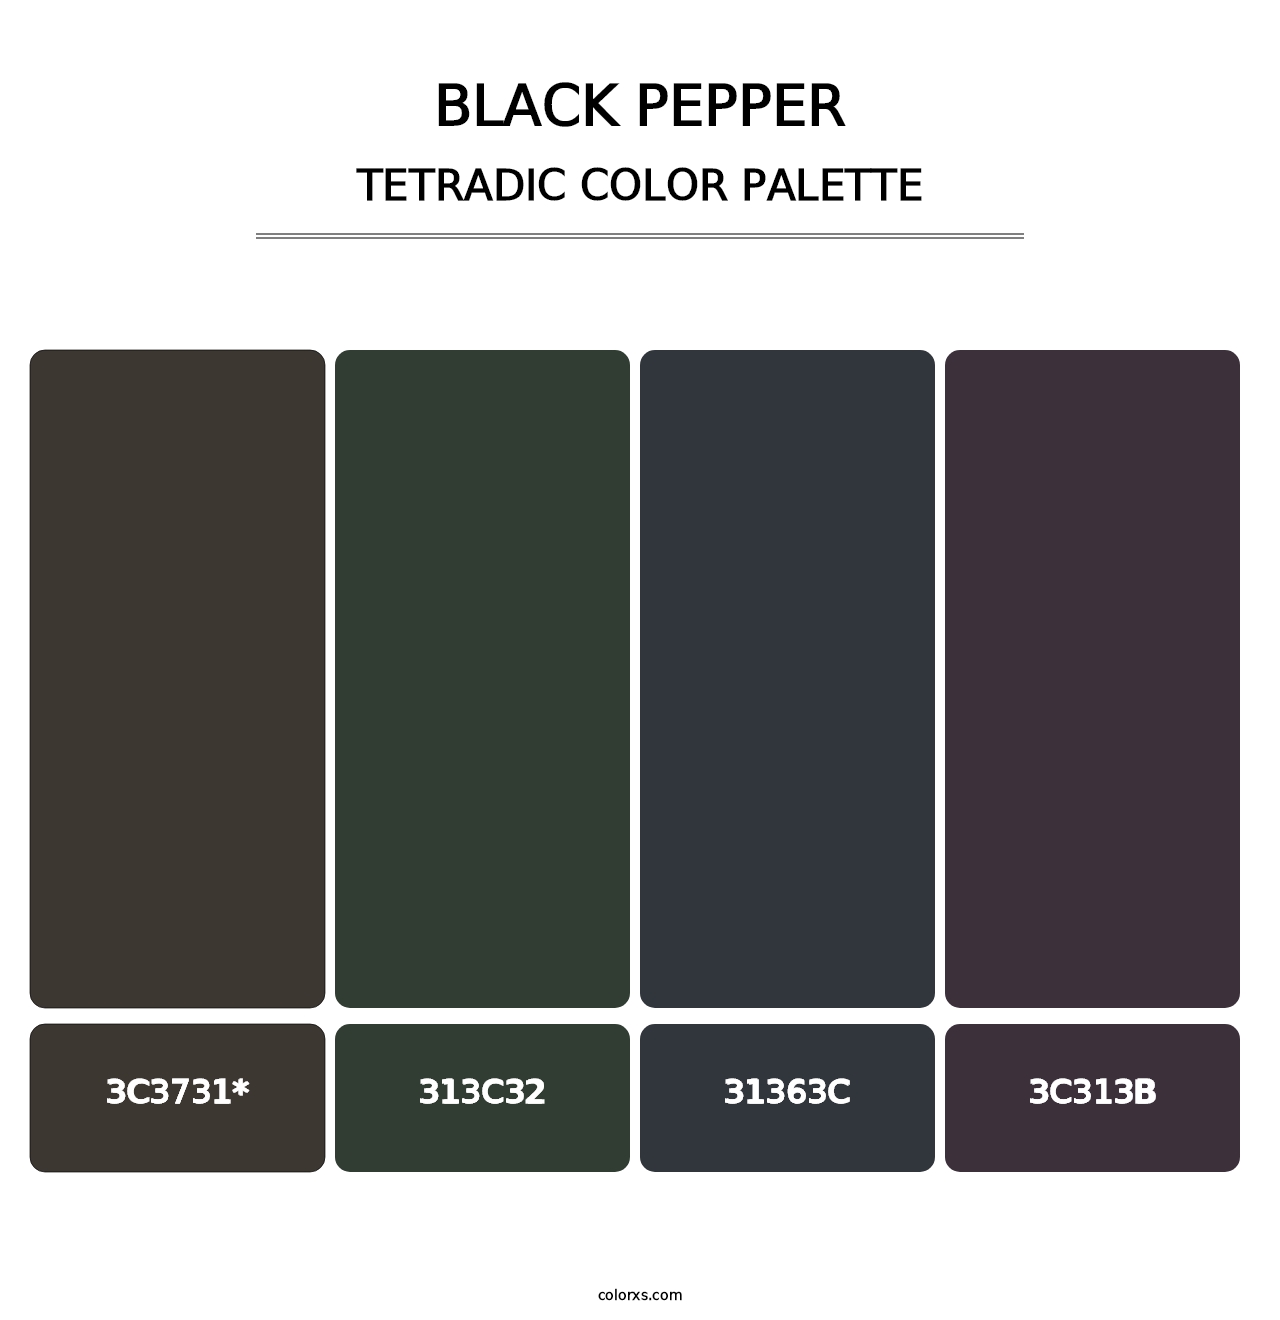 Black Pepper - Tetradic Color Palette